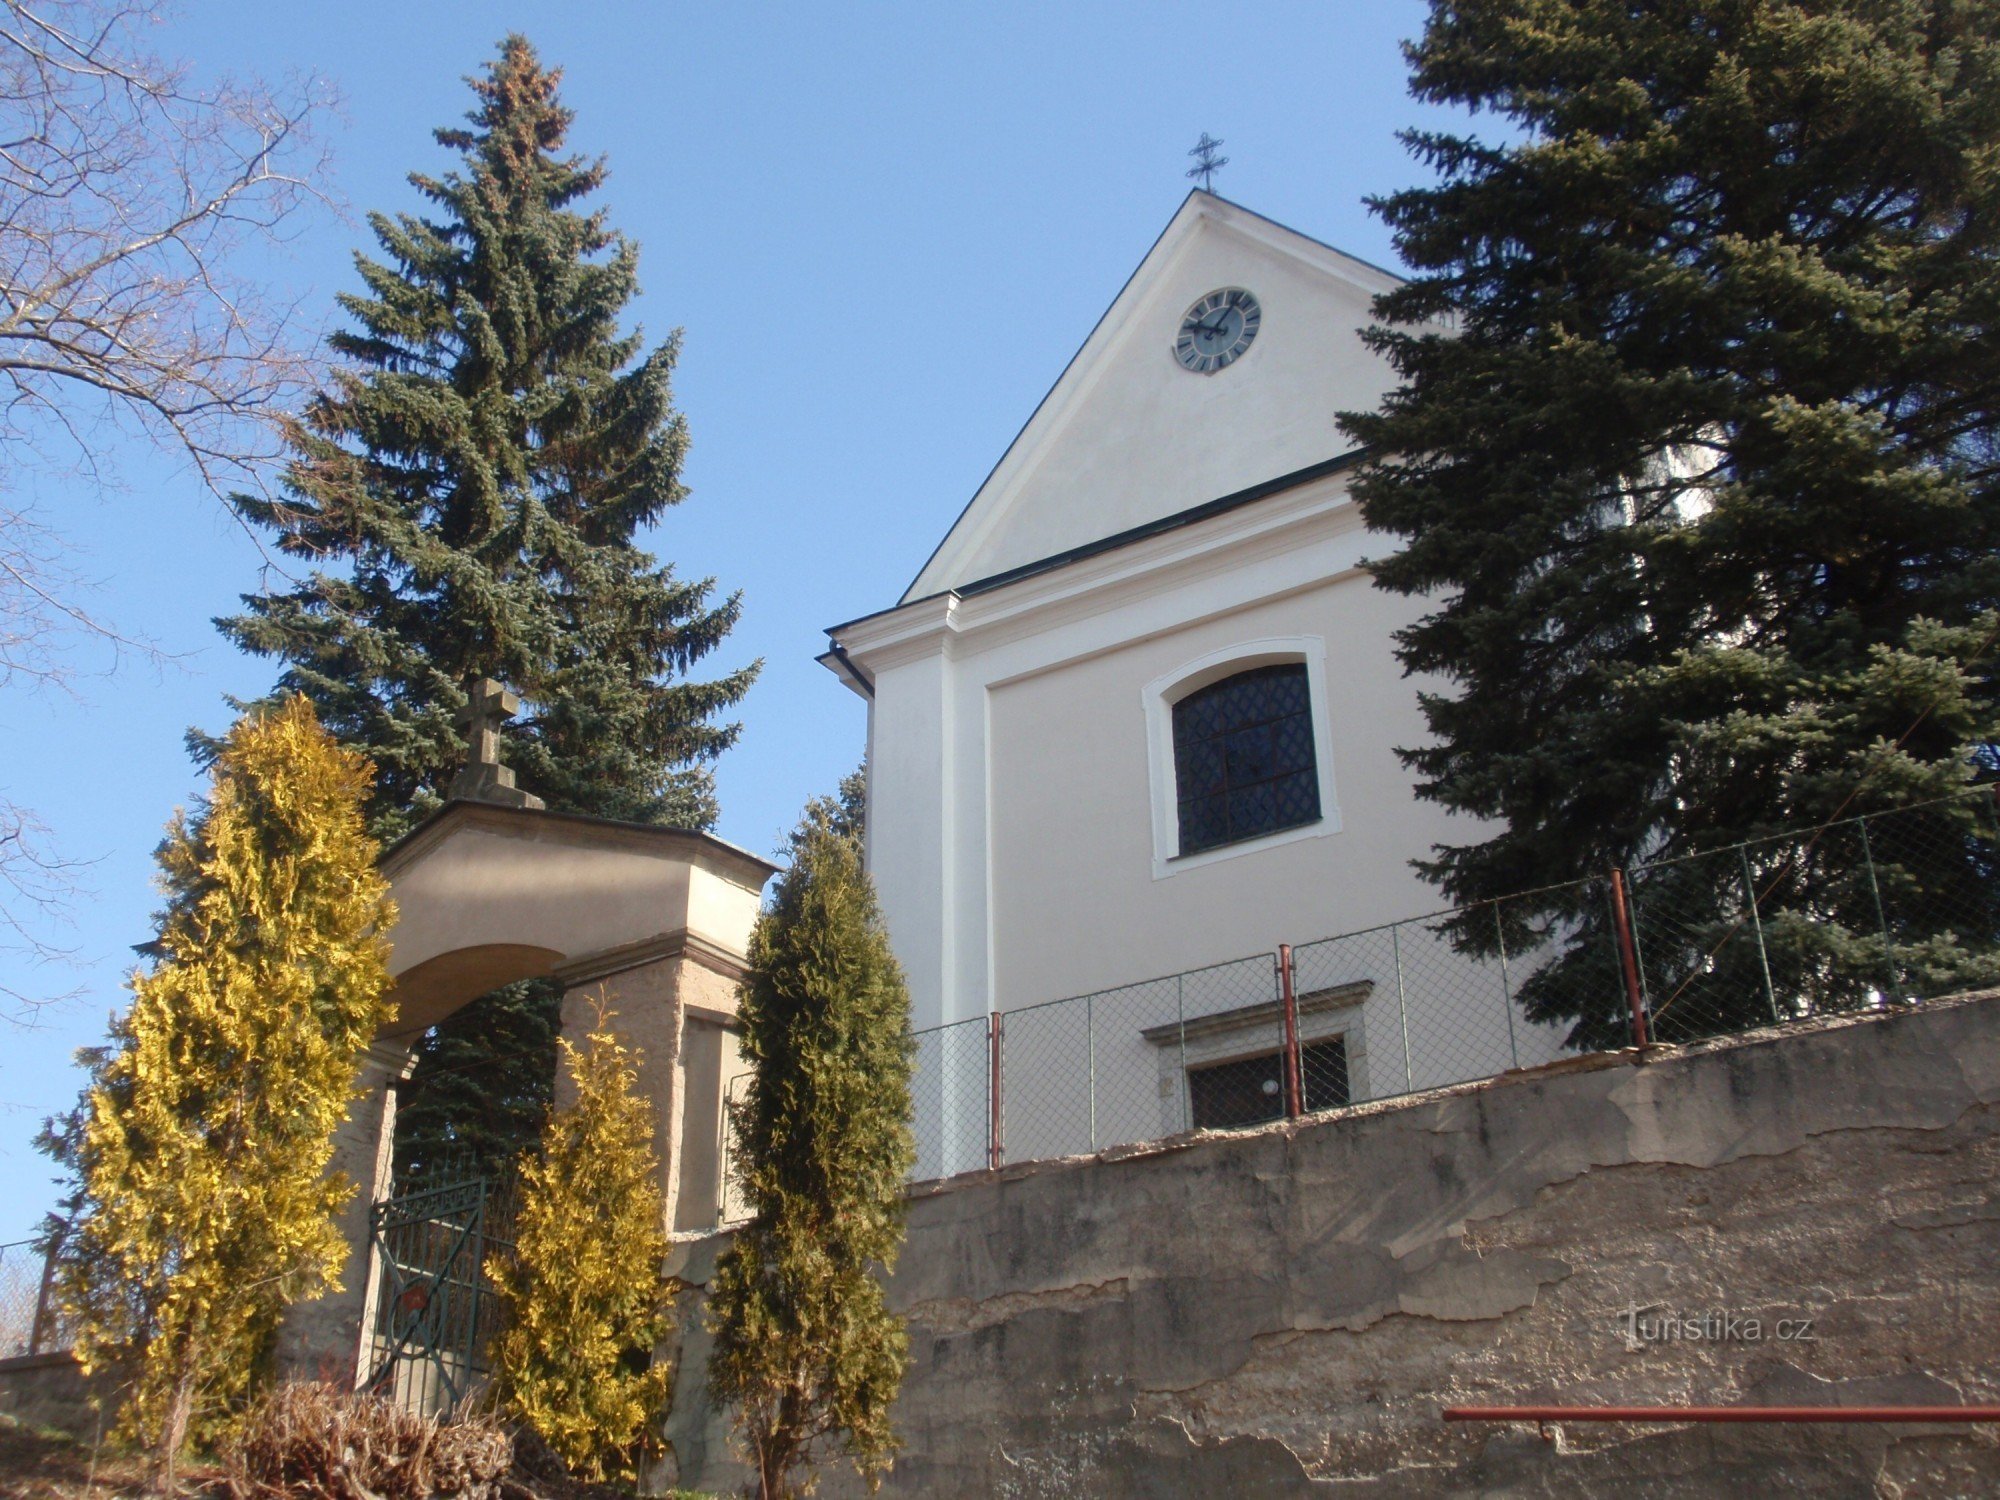 Церковь св. Марии Магдалины в Ретовой